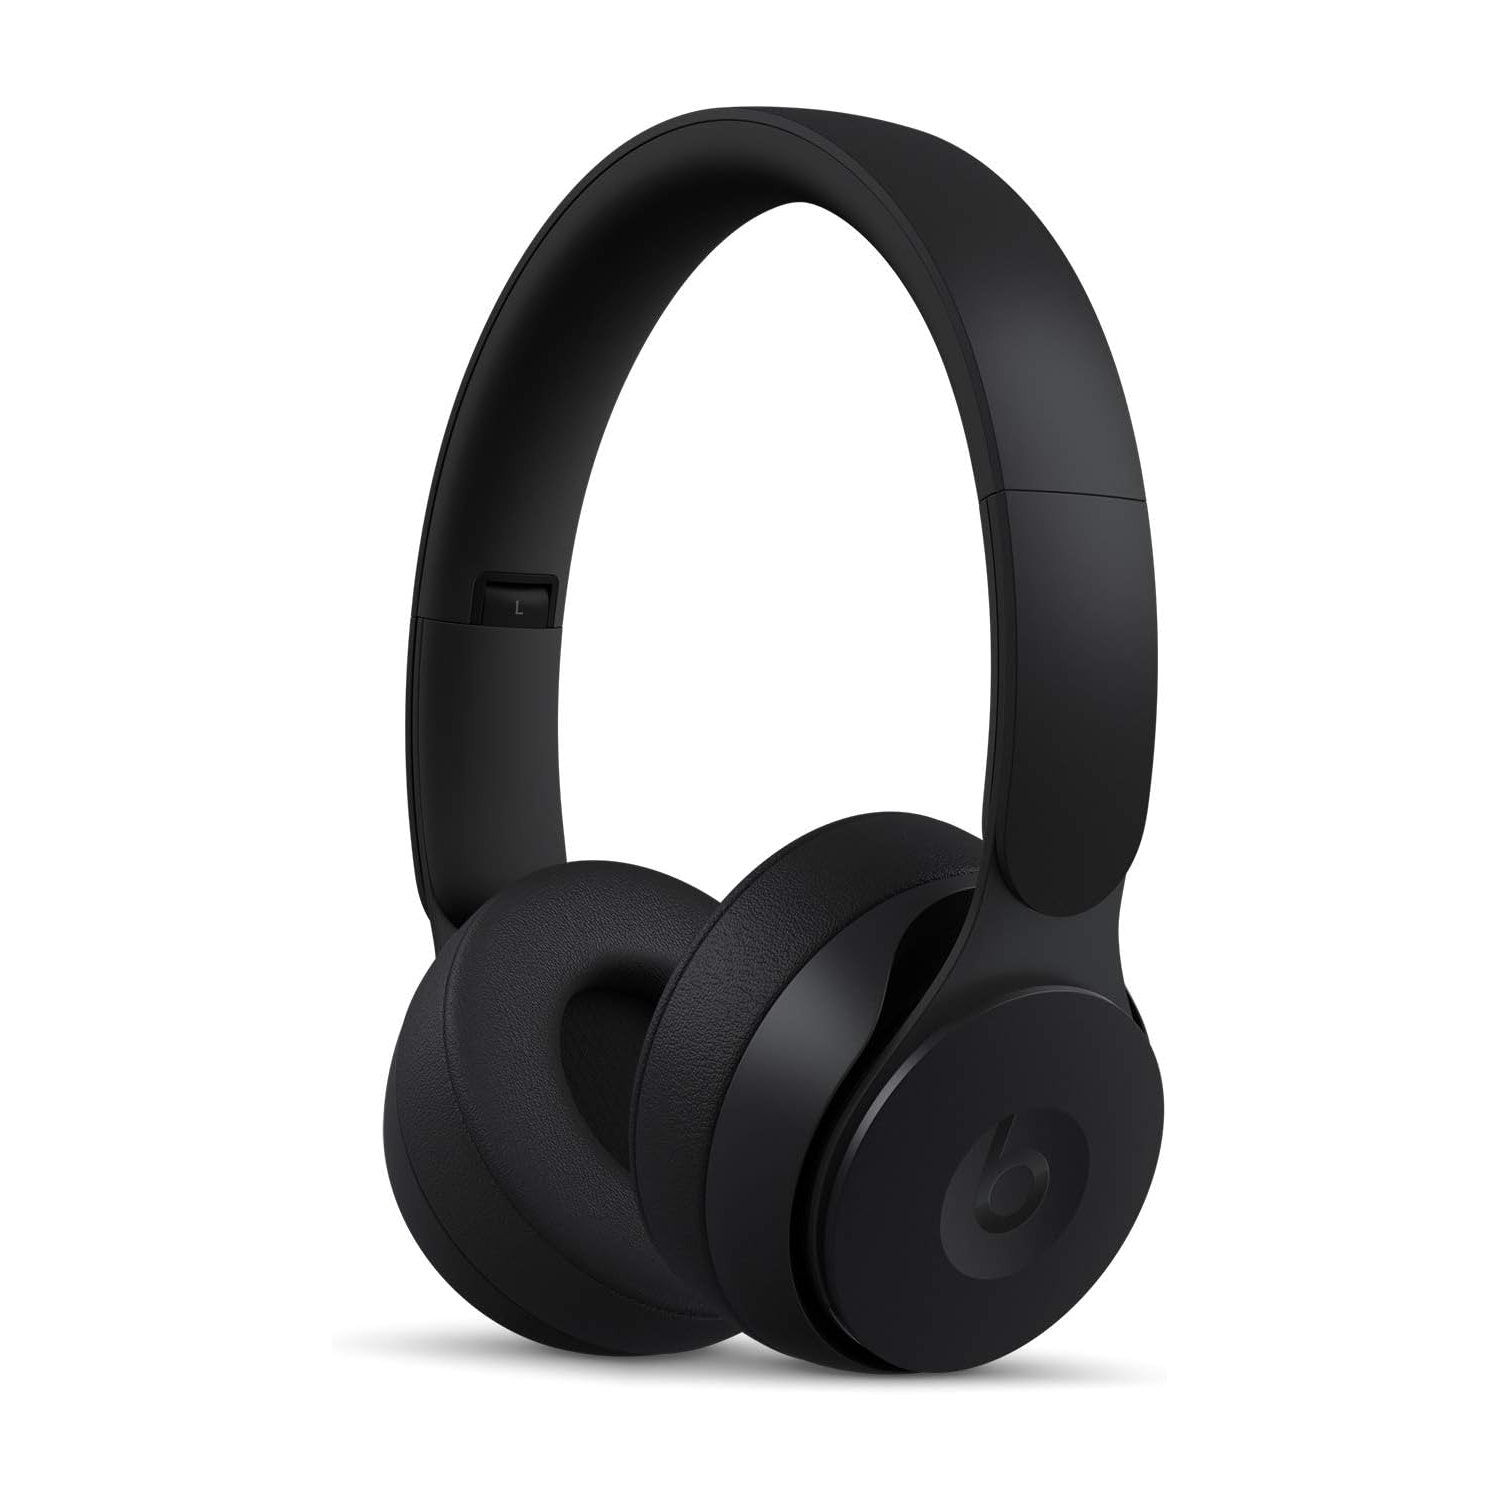 Open Box - Beats Solo Pro Wireless Noise Cancelling On-Ear Headphones - Black